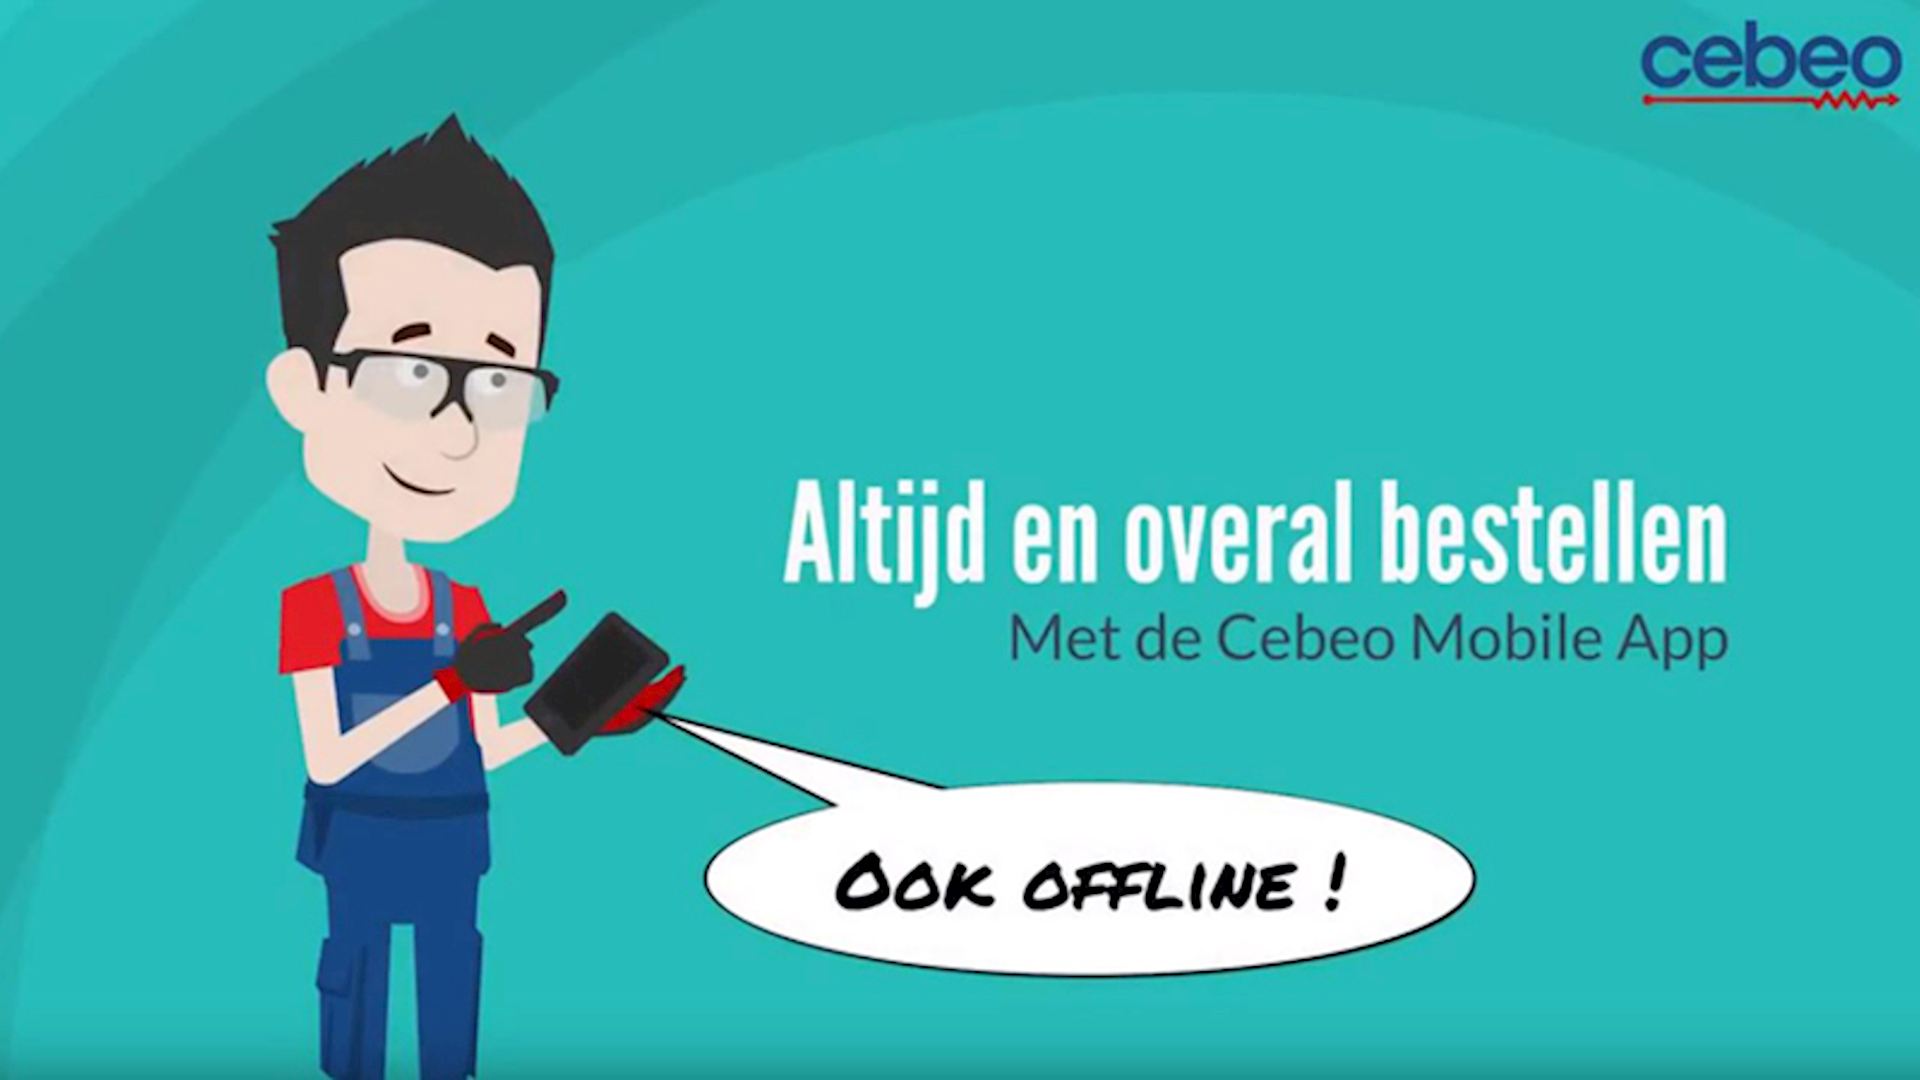 Cebeo Mobile App - Commander hors ligne (00:52)